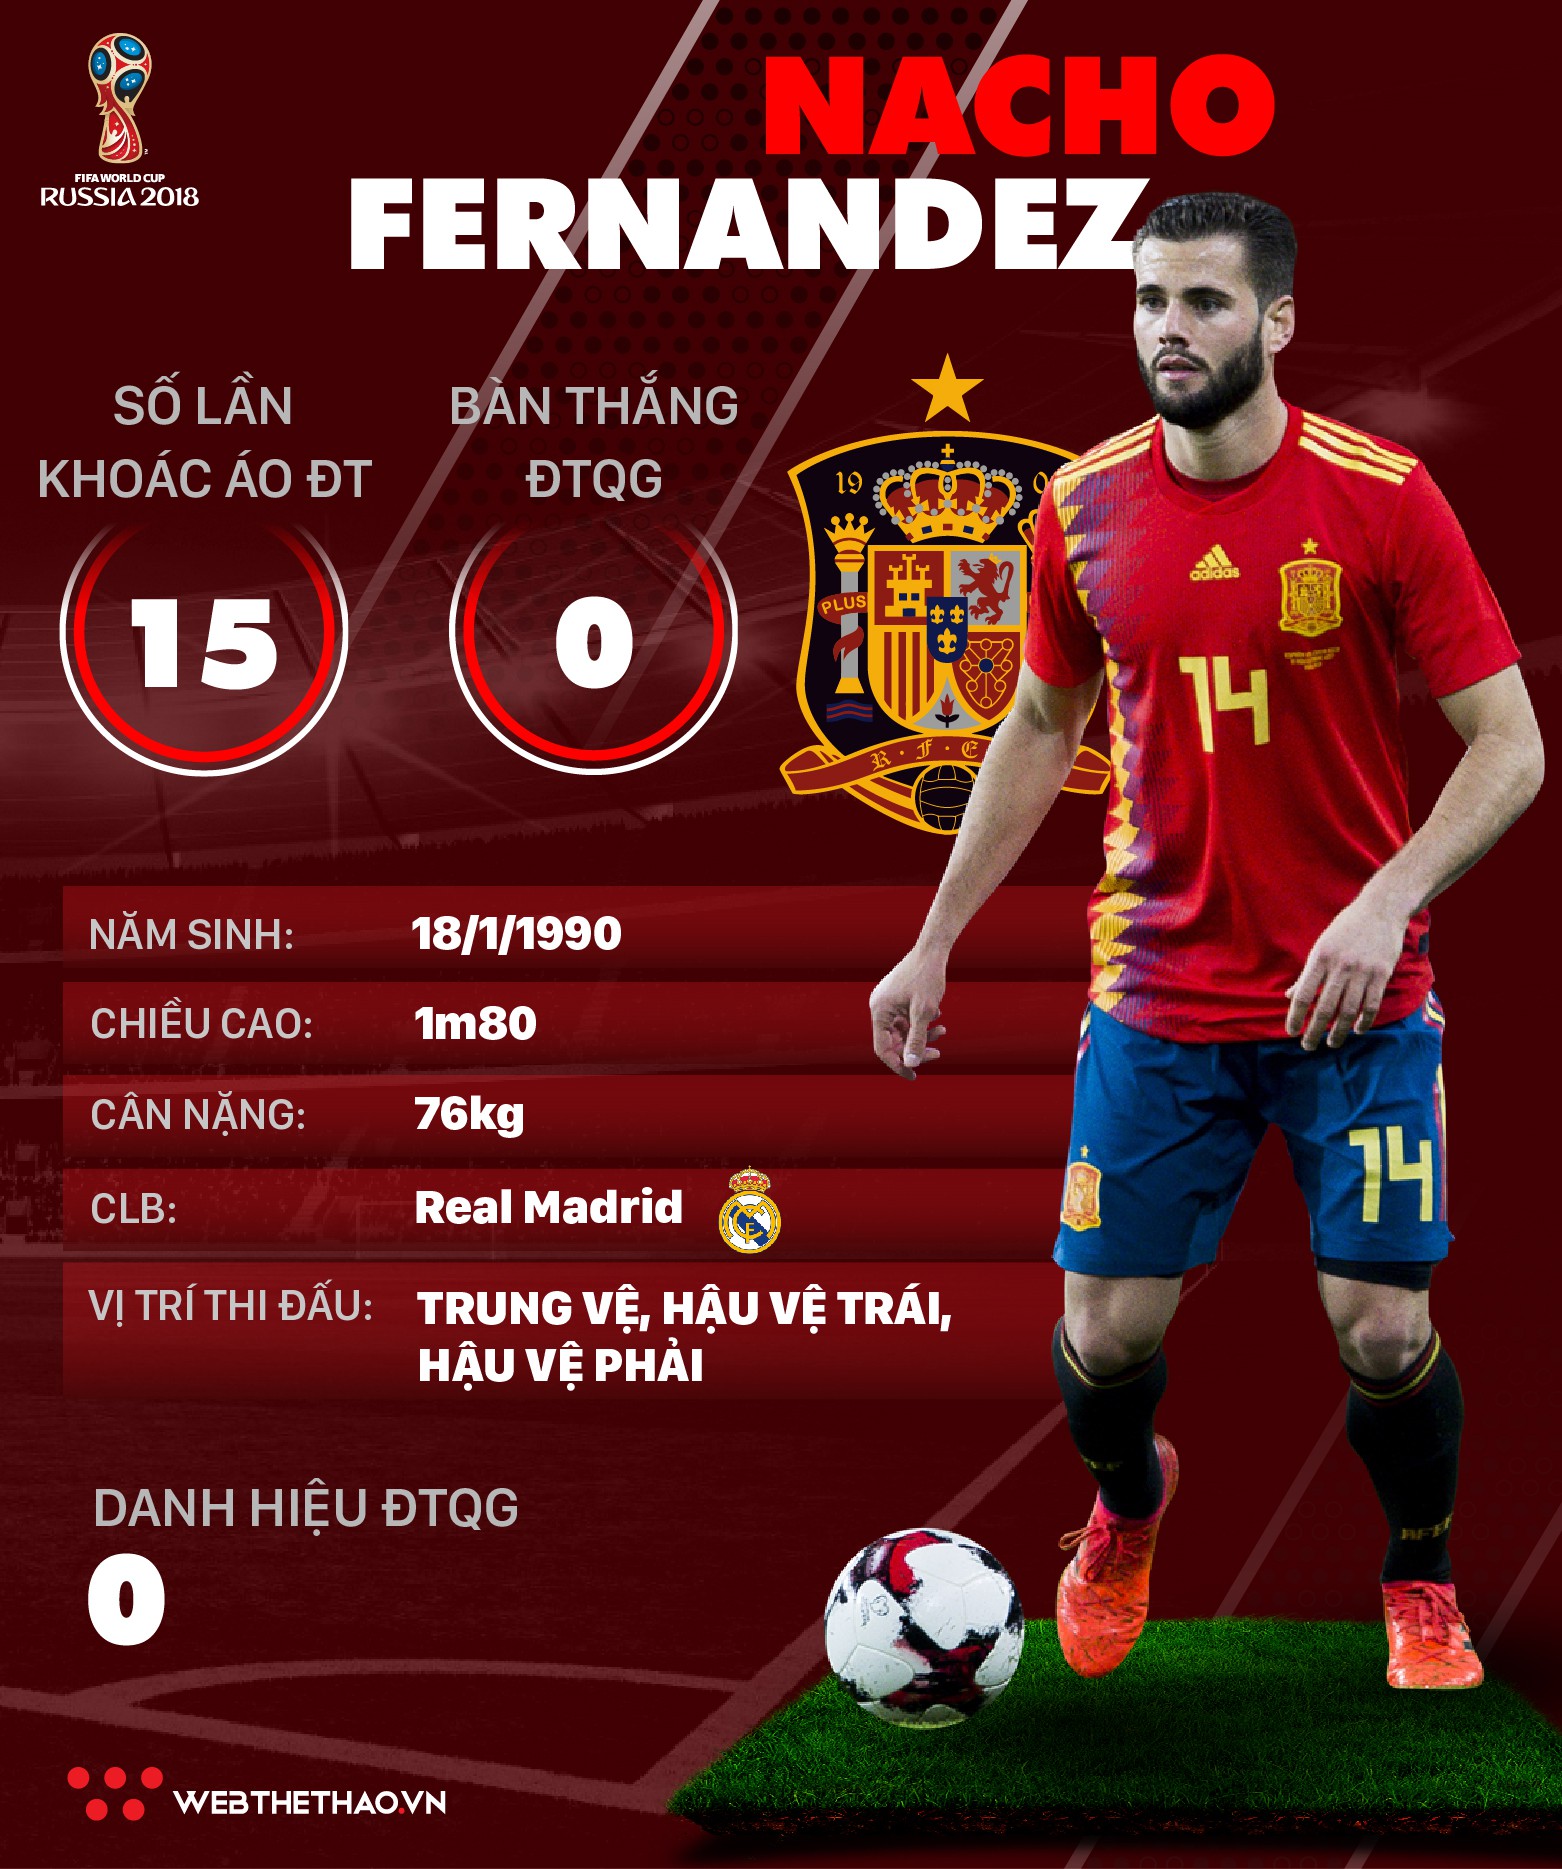 Thông tin cầu thủ Nacho Fernandez của ĐT Tây Ban Nha dự World Cup 2018 - Ảnh 1.